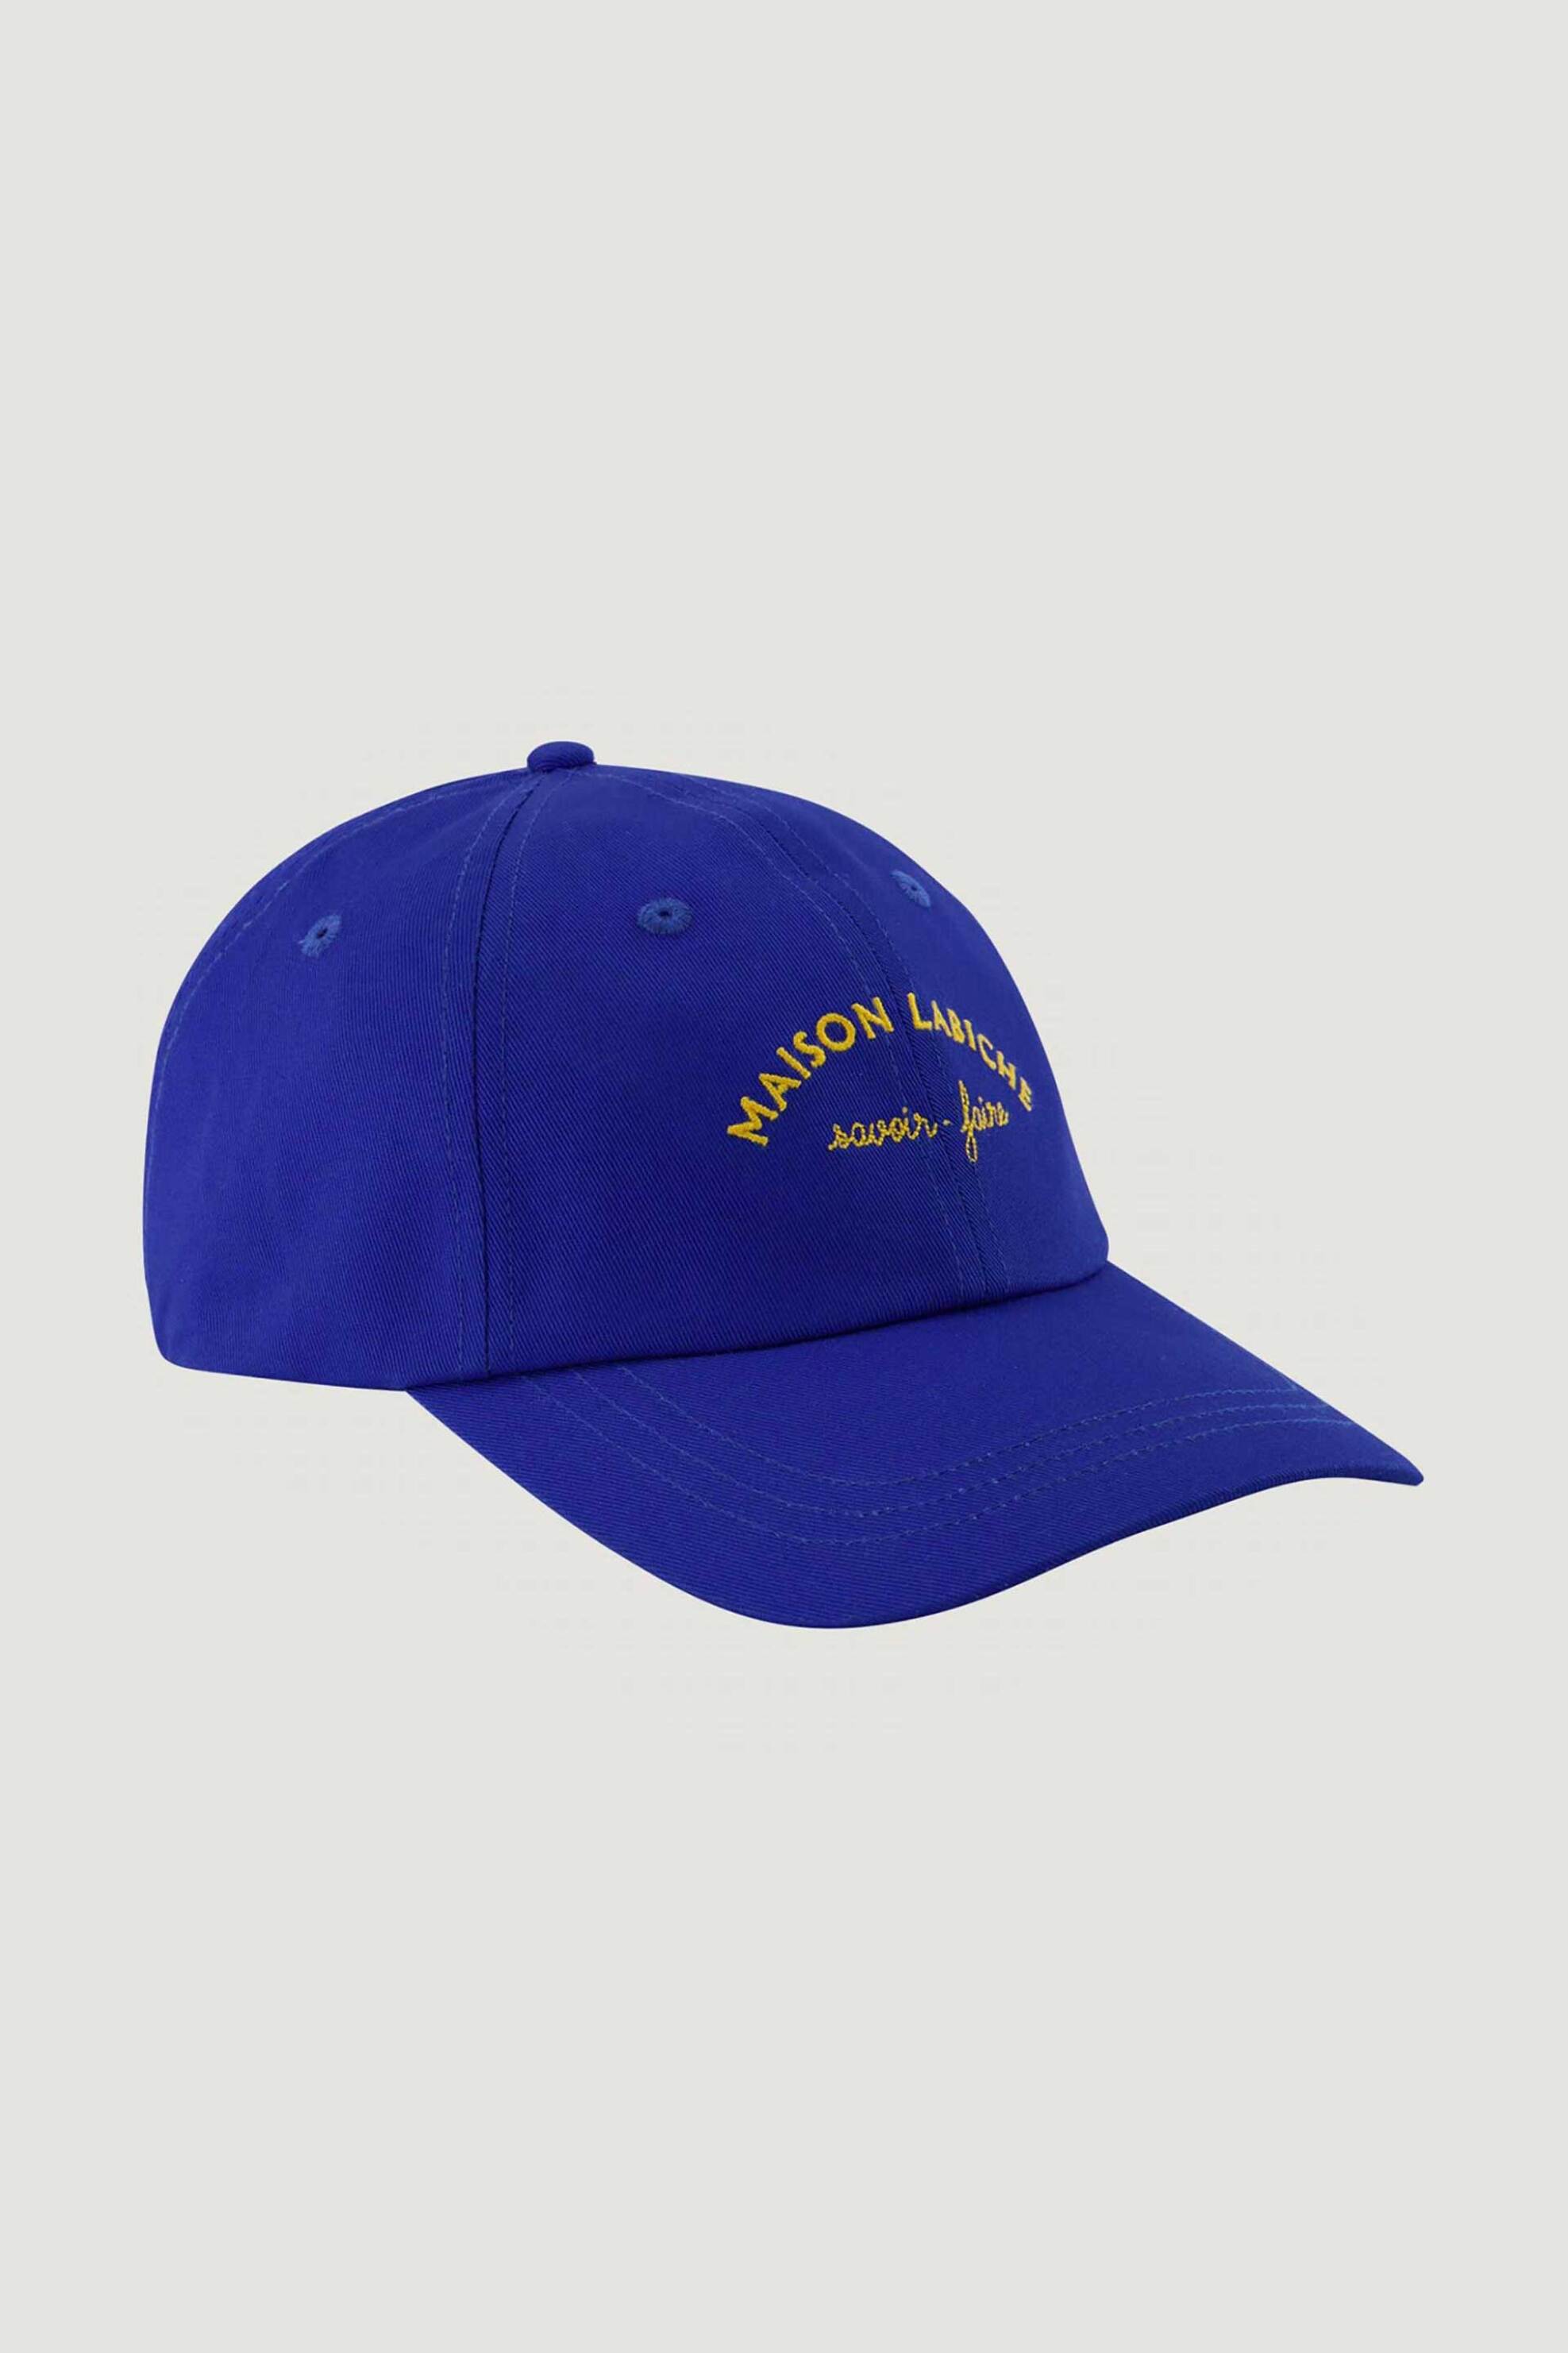 Ανδρική Μόδα > Ανδρικά Αξεσουάρ > Ανδρικά Καπέλα & Σκούφοι Maison Labiche ανδρικό καπέλο "Mini Manufacture Beaumont" - SABEAUMONTMLB Μπλε Ρουά